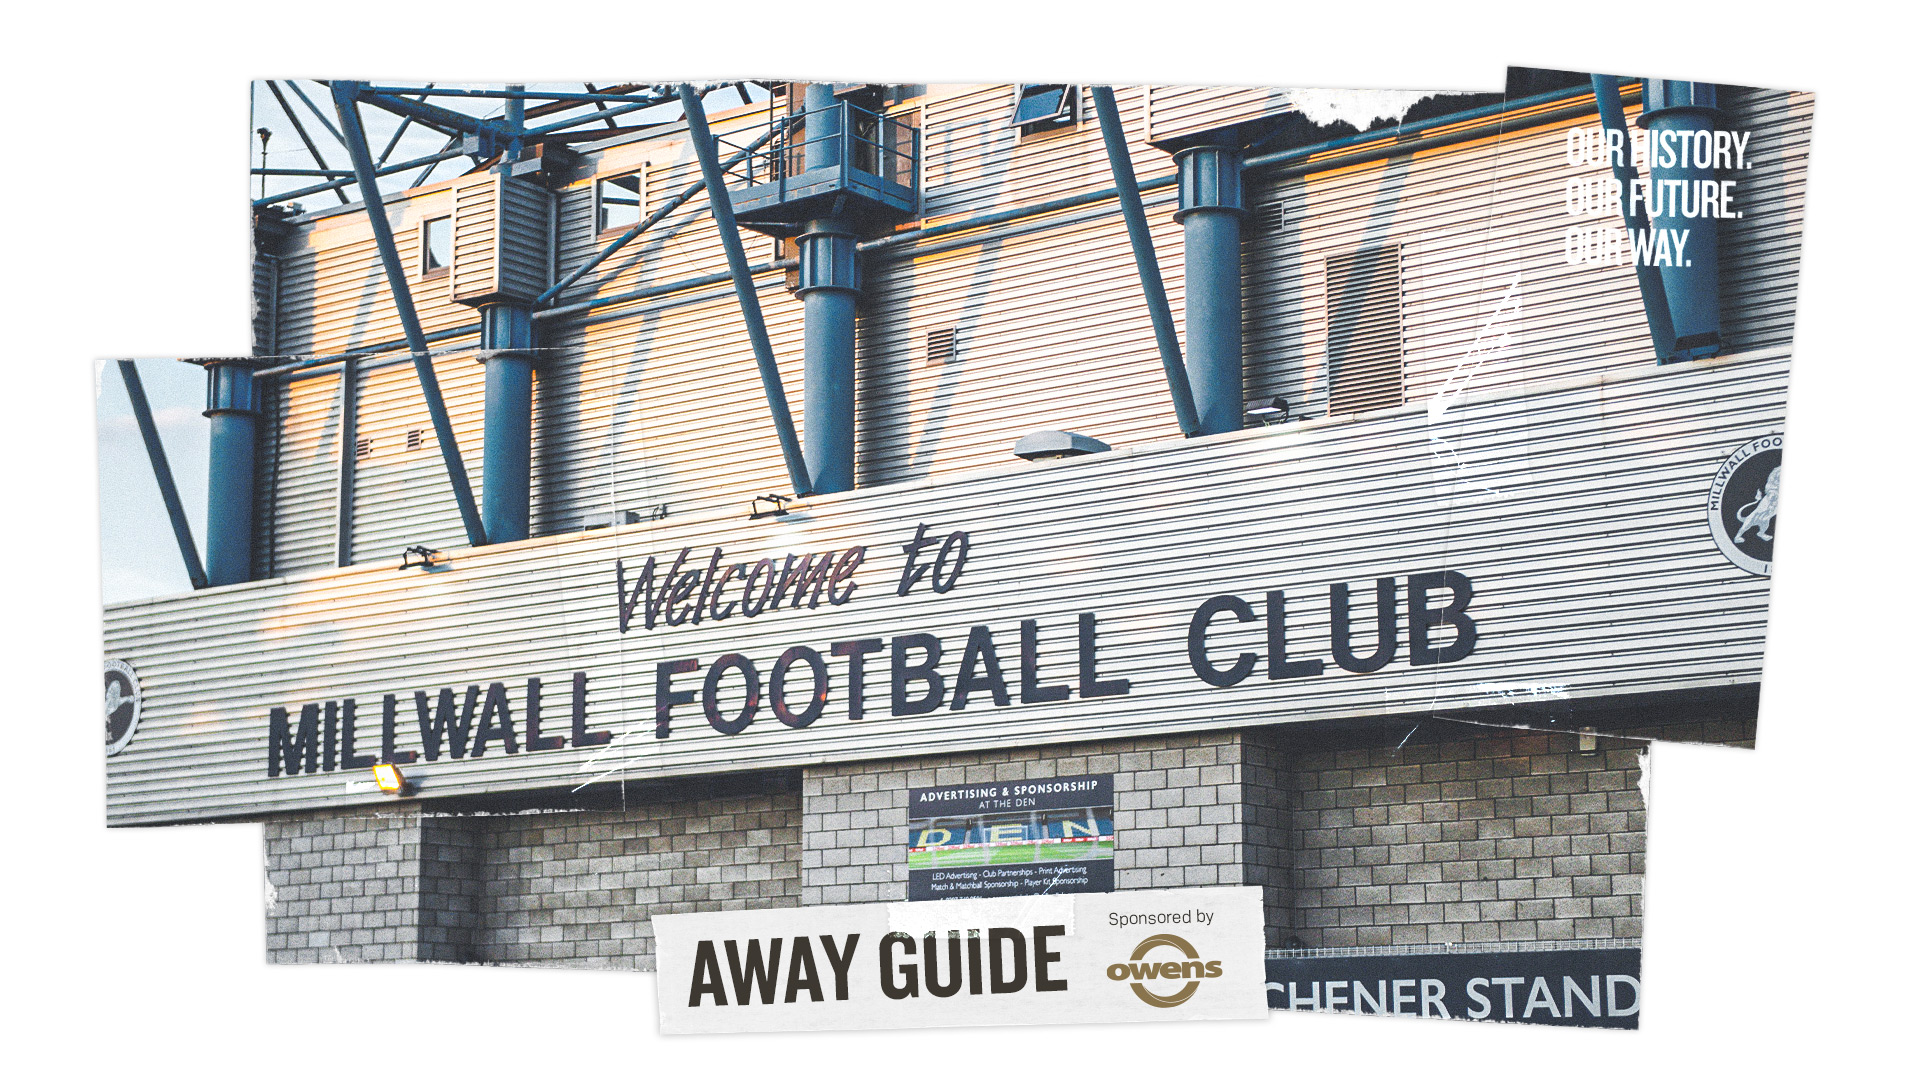 Millwall Football Club - O que saber antes de ir (ATUALIZADO 2023)